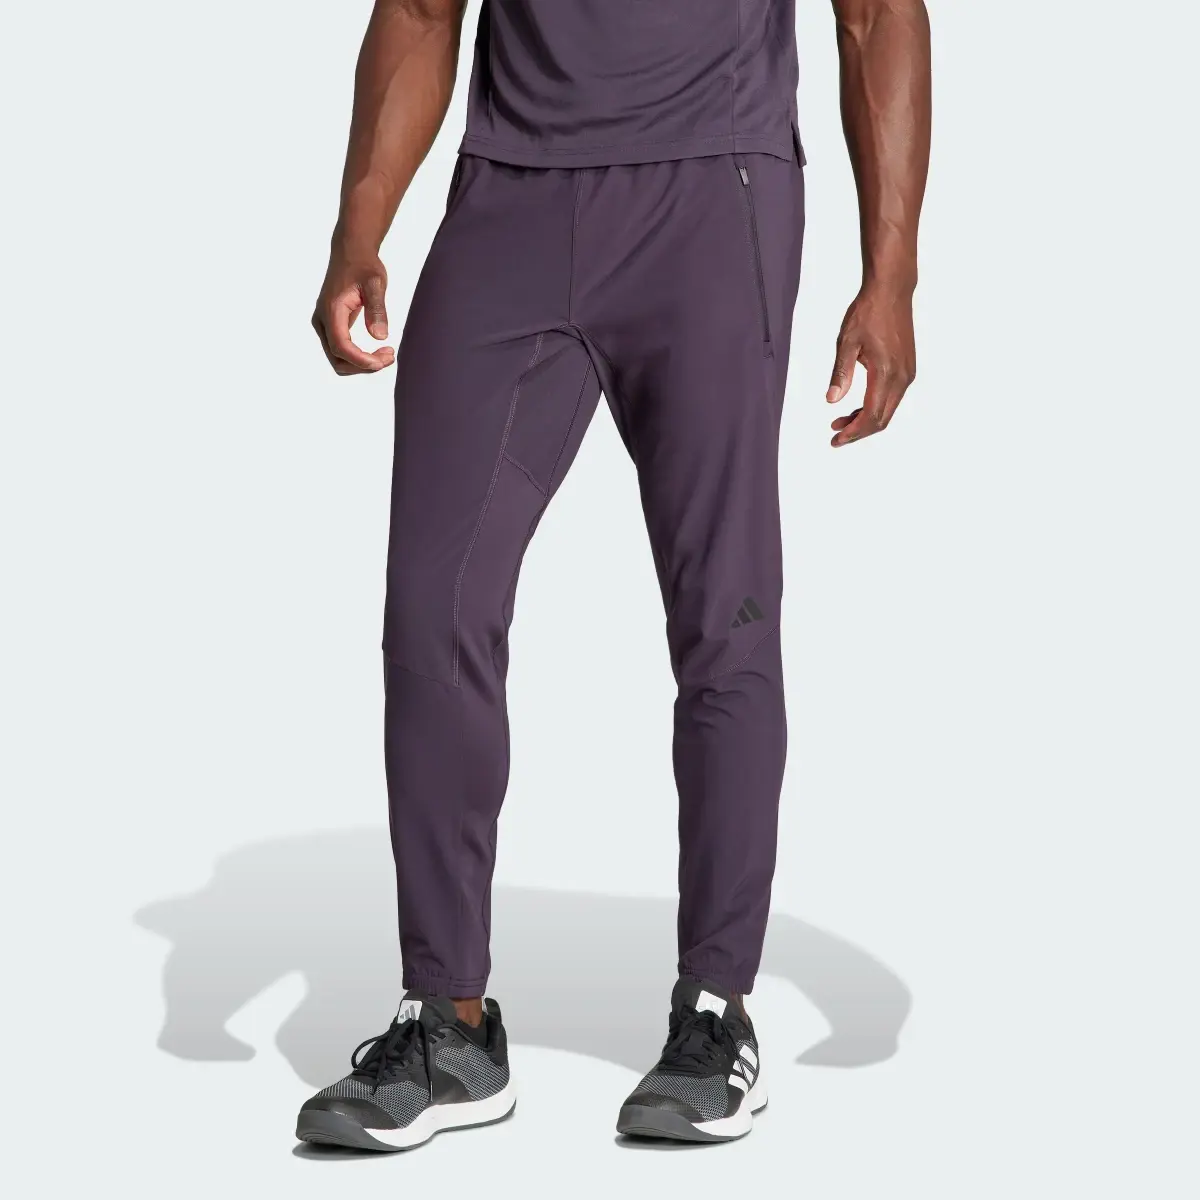 Adidas Pantaloni Designed for Training Workout. 1